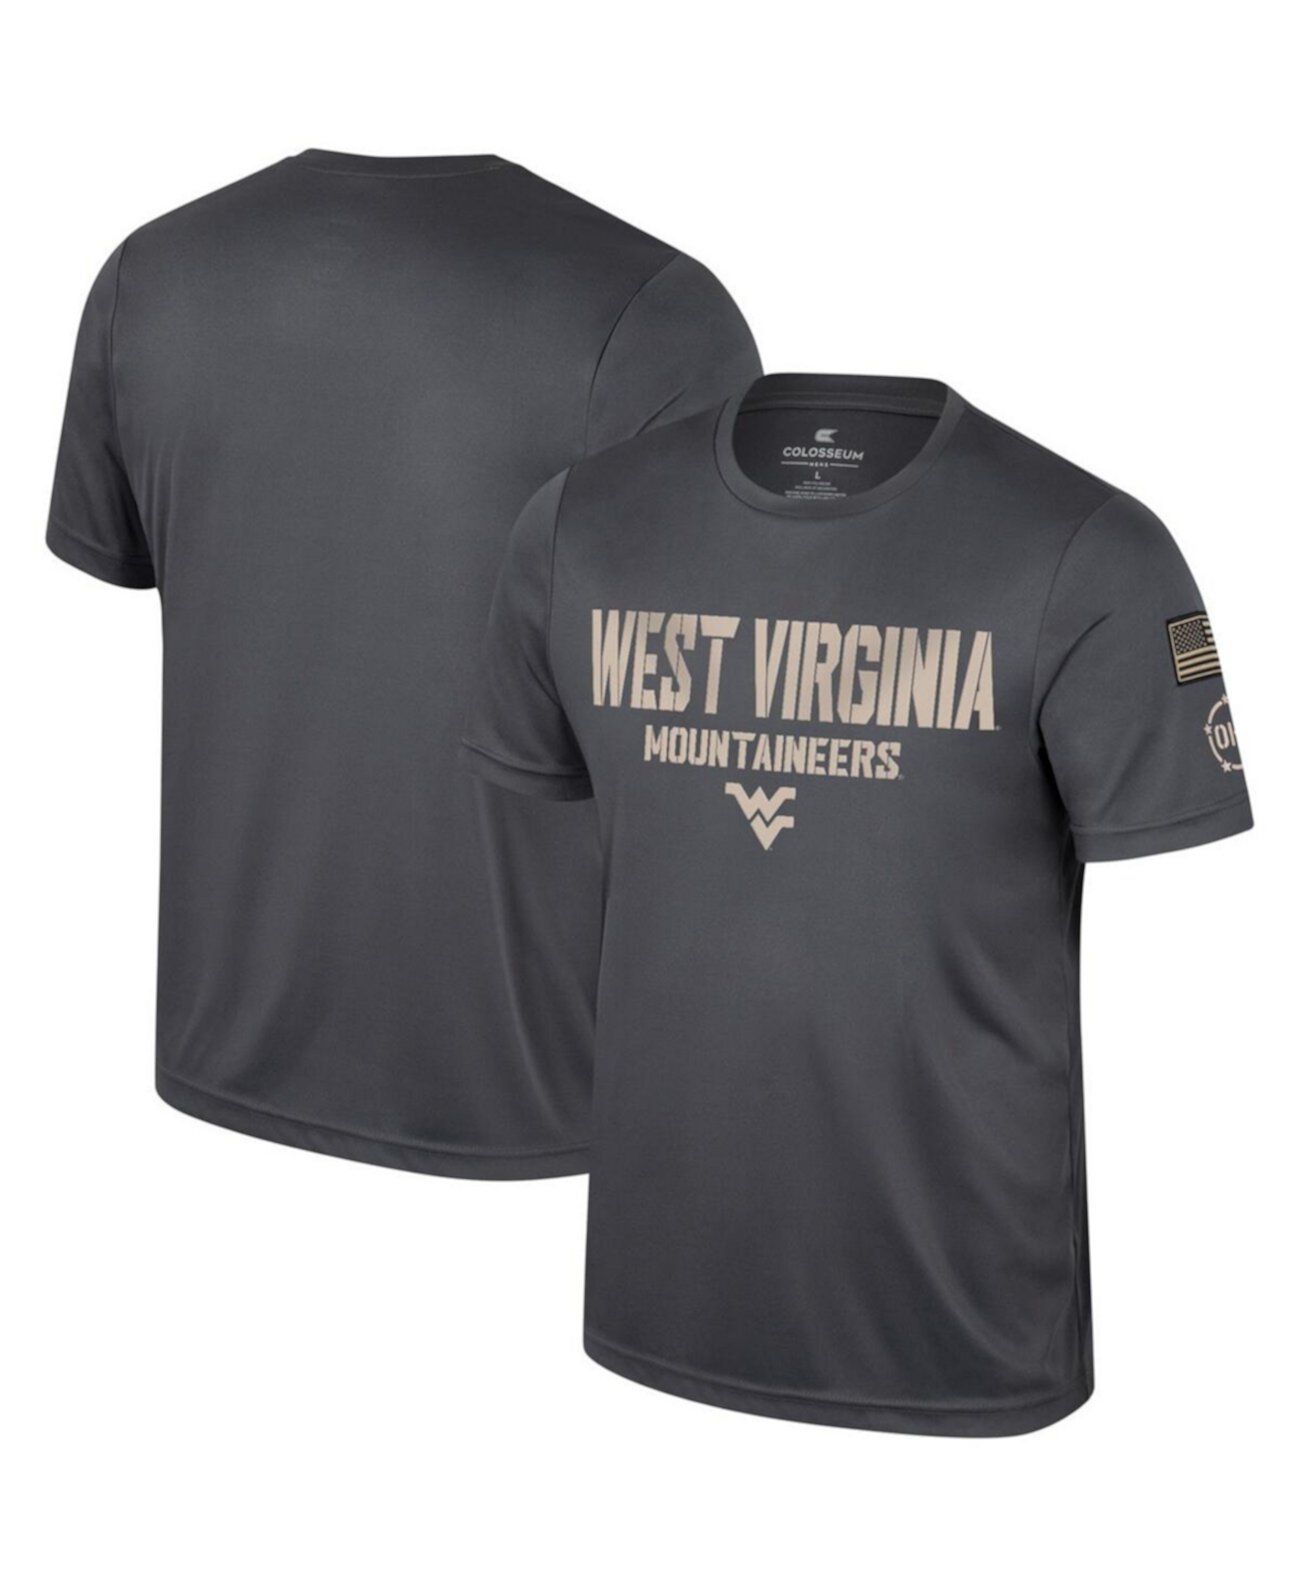 Мужская темно-серая футболка West Virginia Mountaineers OHT в военном стиле с благодарностью Colosseum